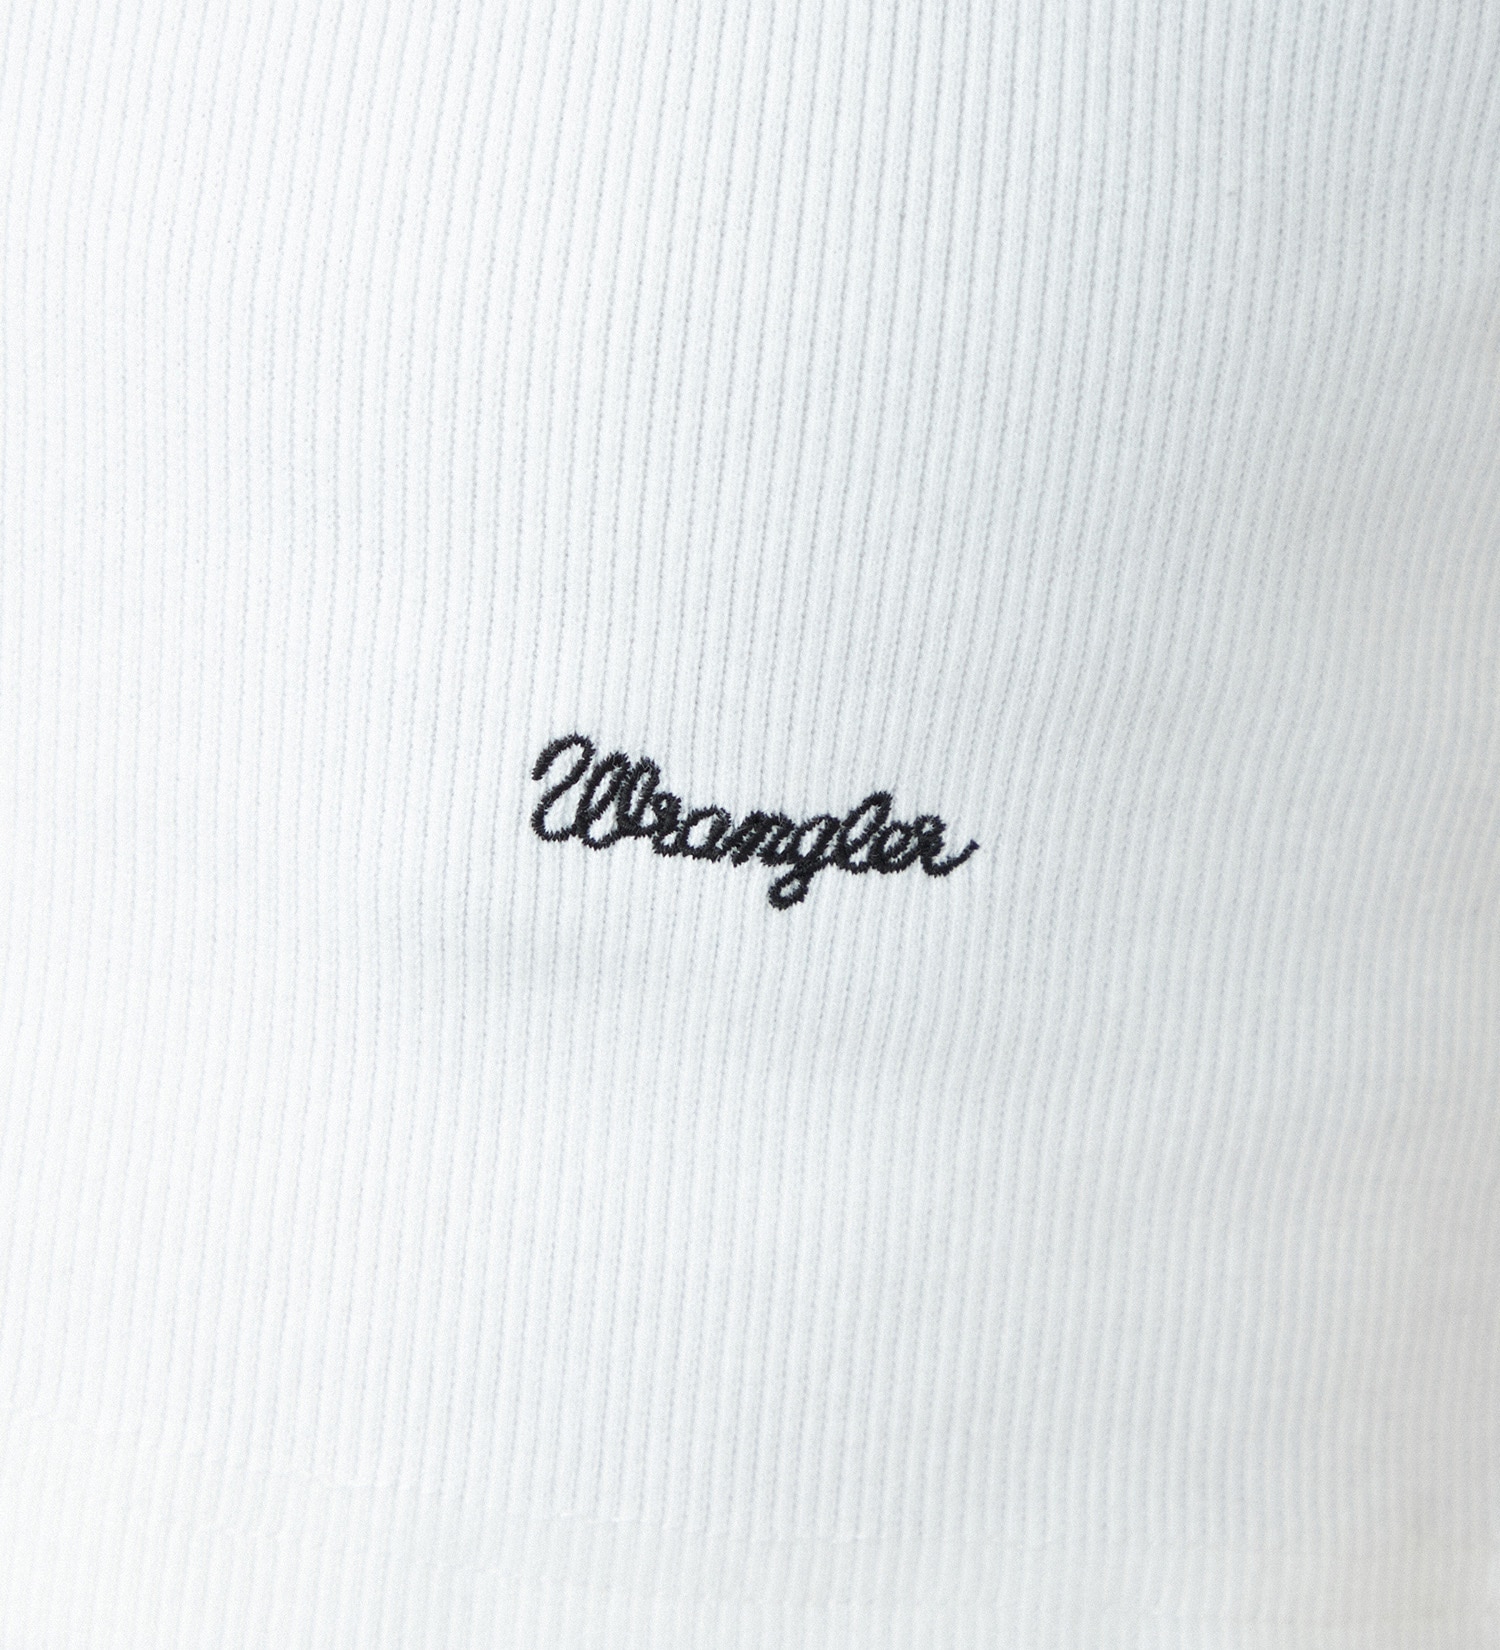 Wrangler(ラングラー)のクロップドリブタンクトップTee|トップス/タンクトップ/レディース|ホワイト